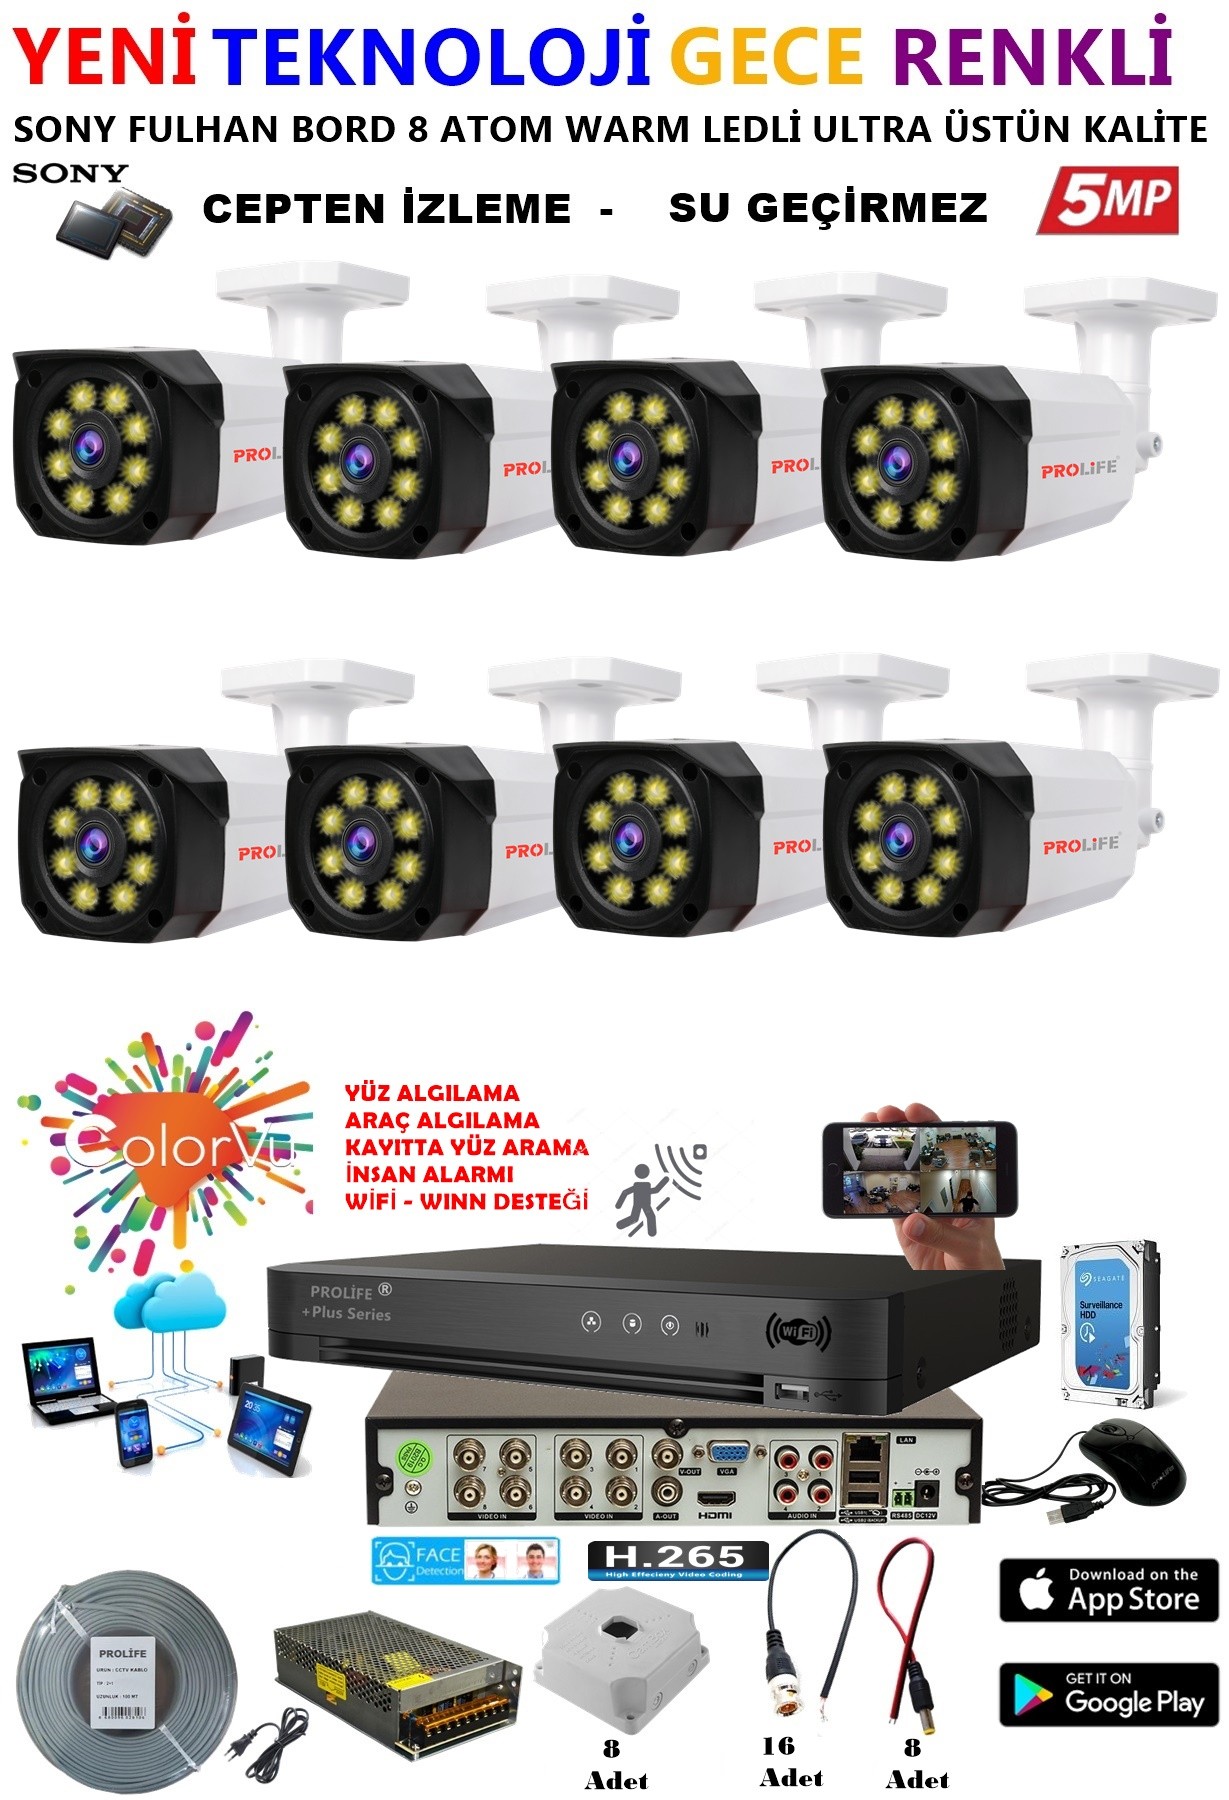 8 Kameralı 5 MP Gece Renkli Yapay Zeka Yüz ve Araç Algılamalı Olay Anı Bildirimli Kuruluma Hazır Kamera Seti